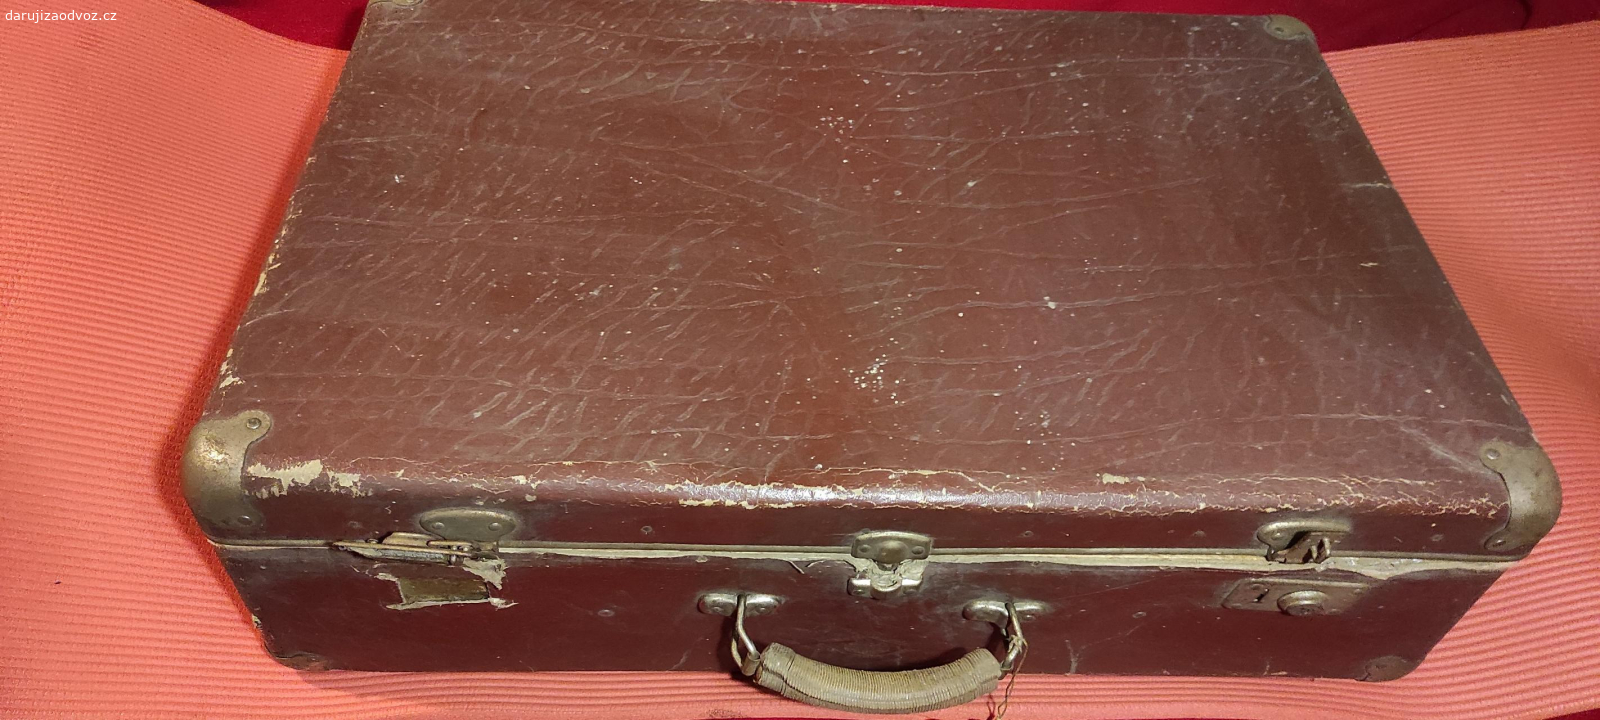 starý papírový kufr. Starý kufr, nefunguje zámek, sloužil kdysi jako kufr na tábor.